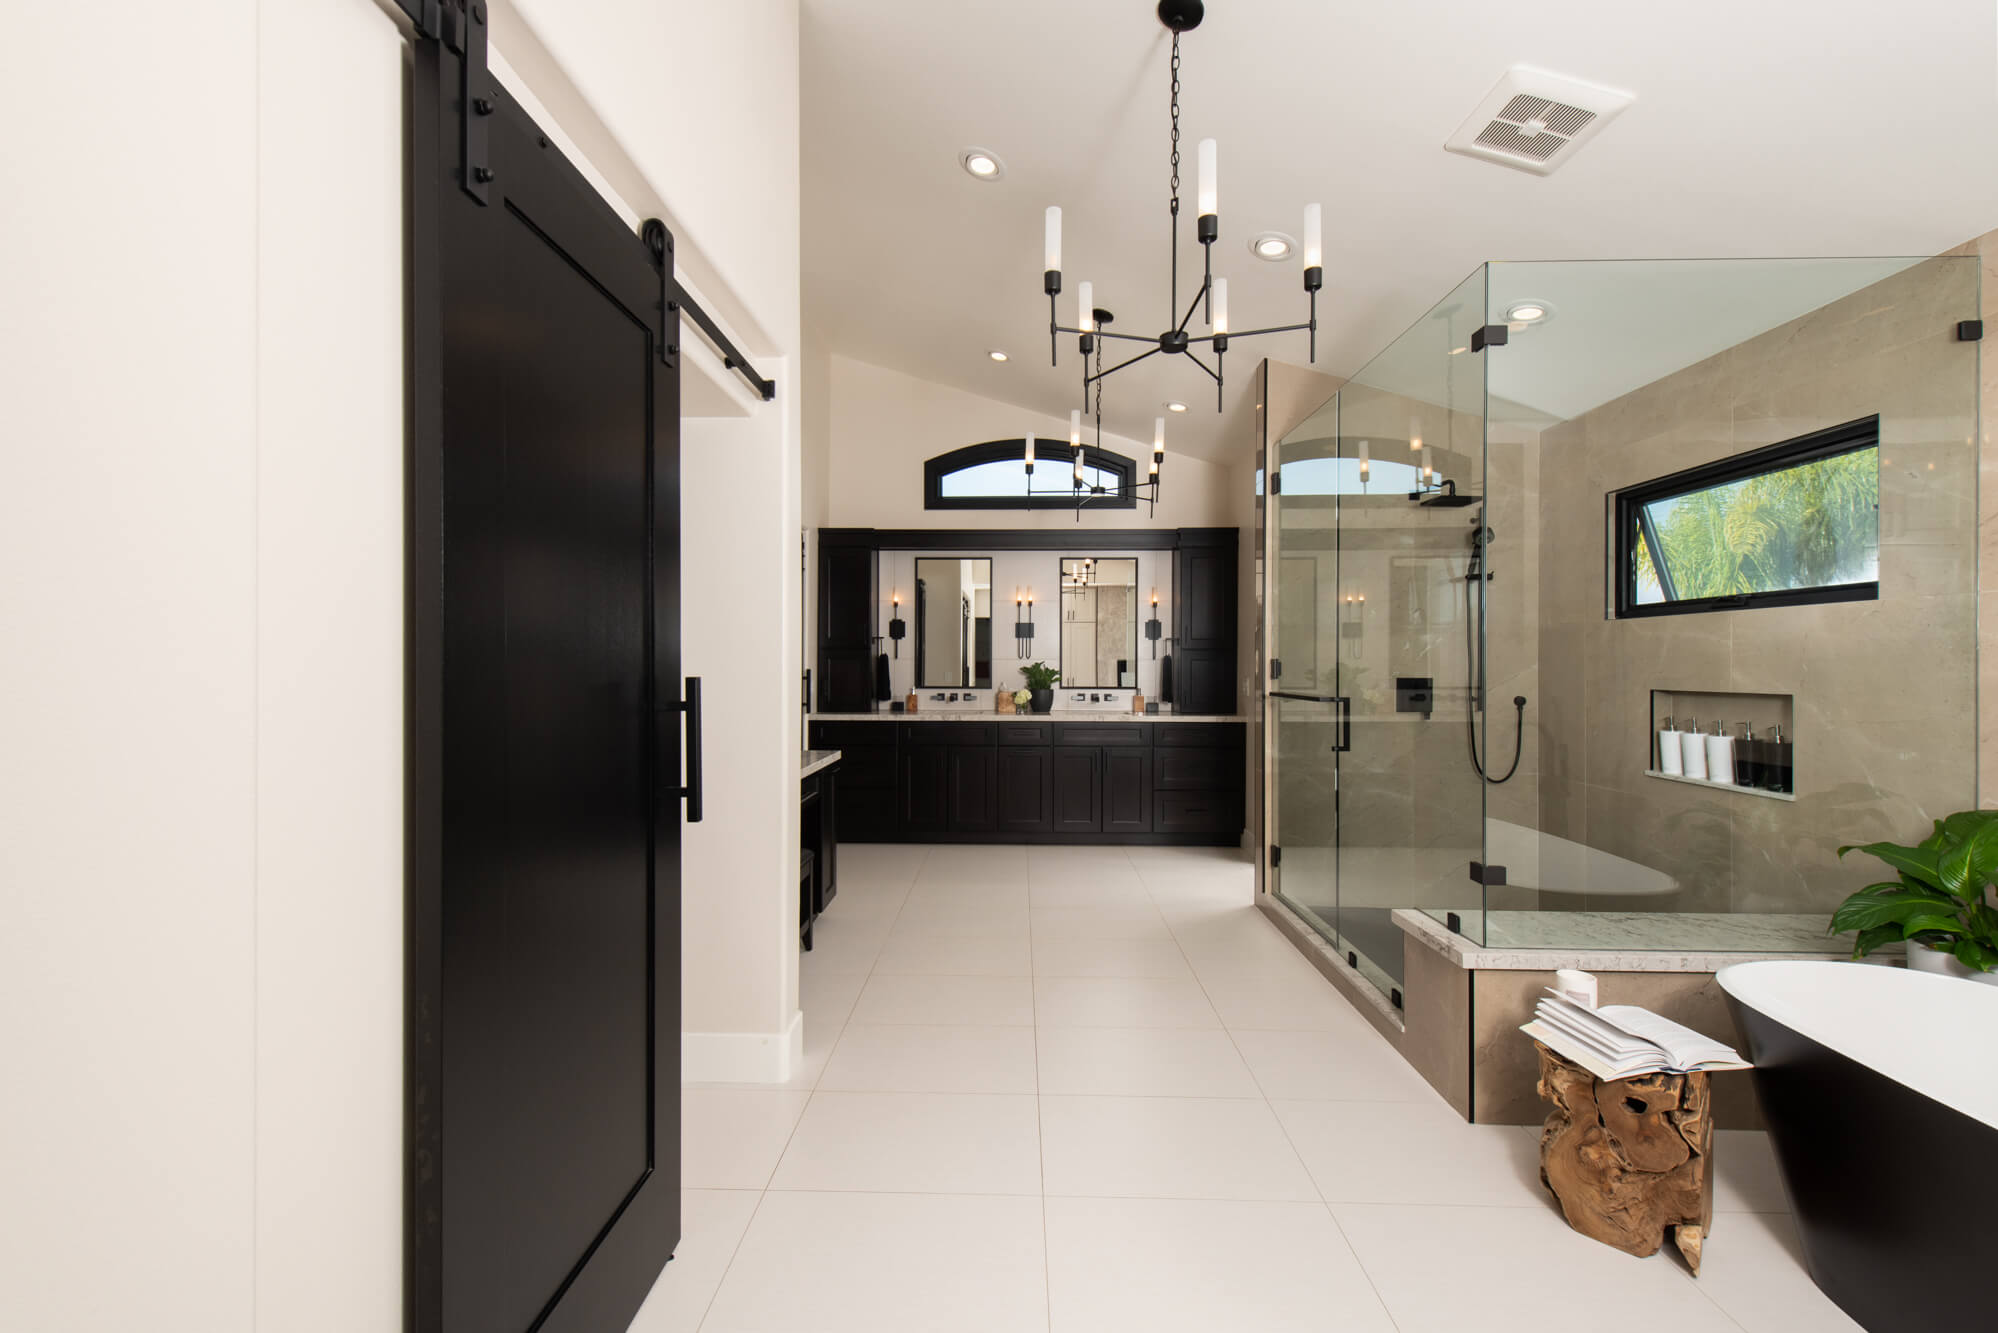 Anaheim Hills master bathroom remodel